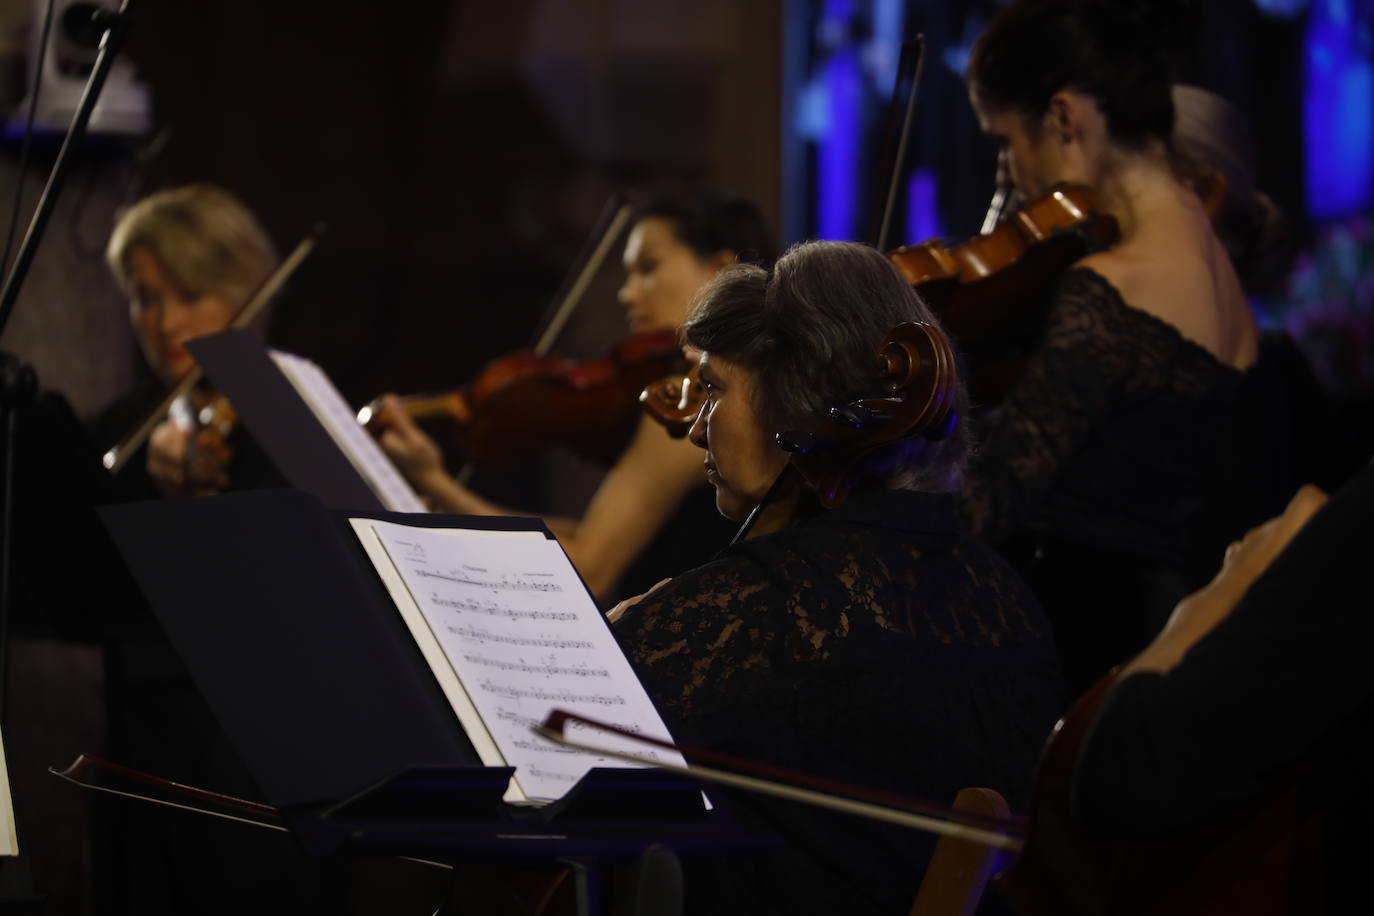 El concierto de la Orquesta de Cámara de Viena en Córdoba, en imágenes